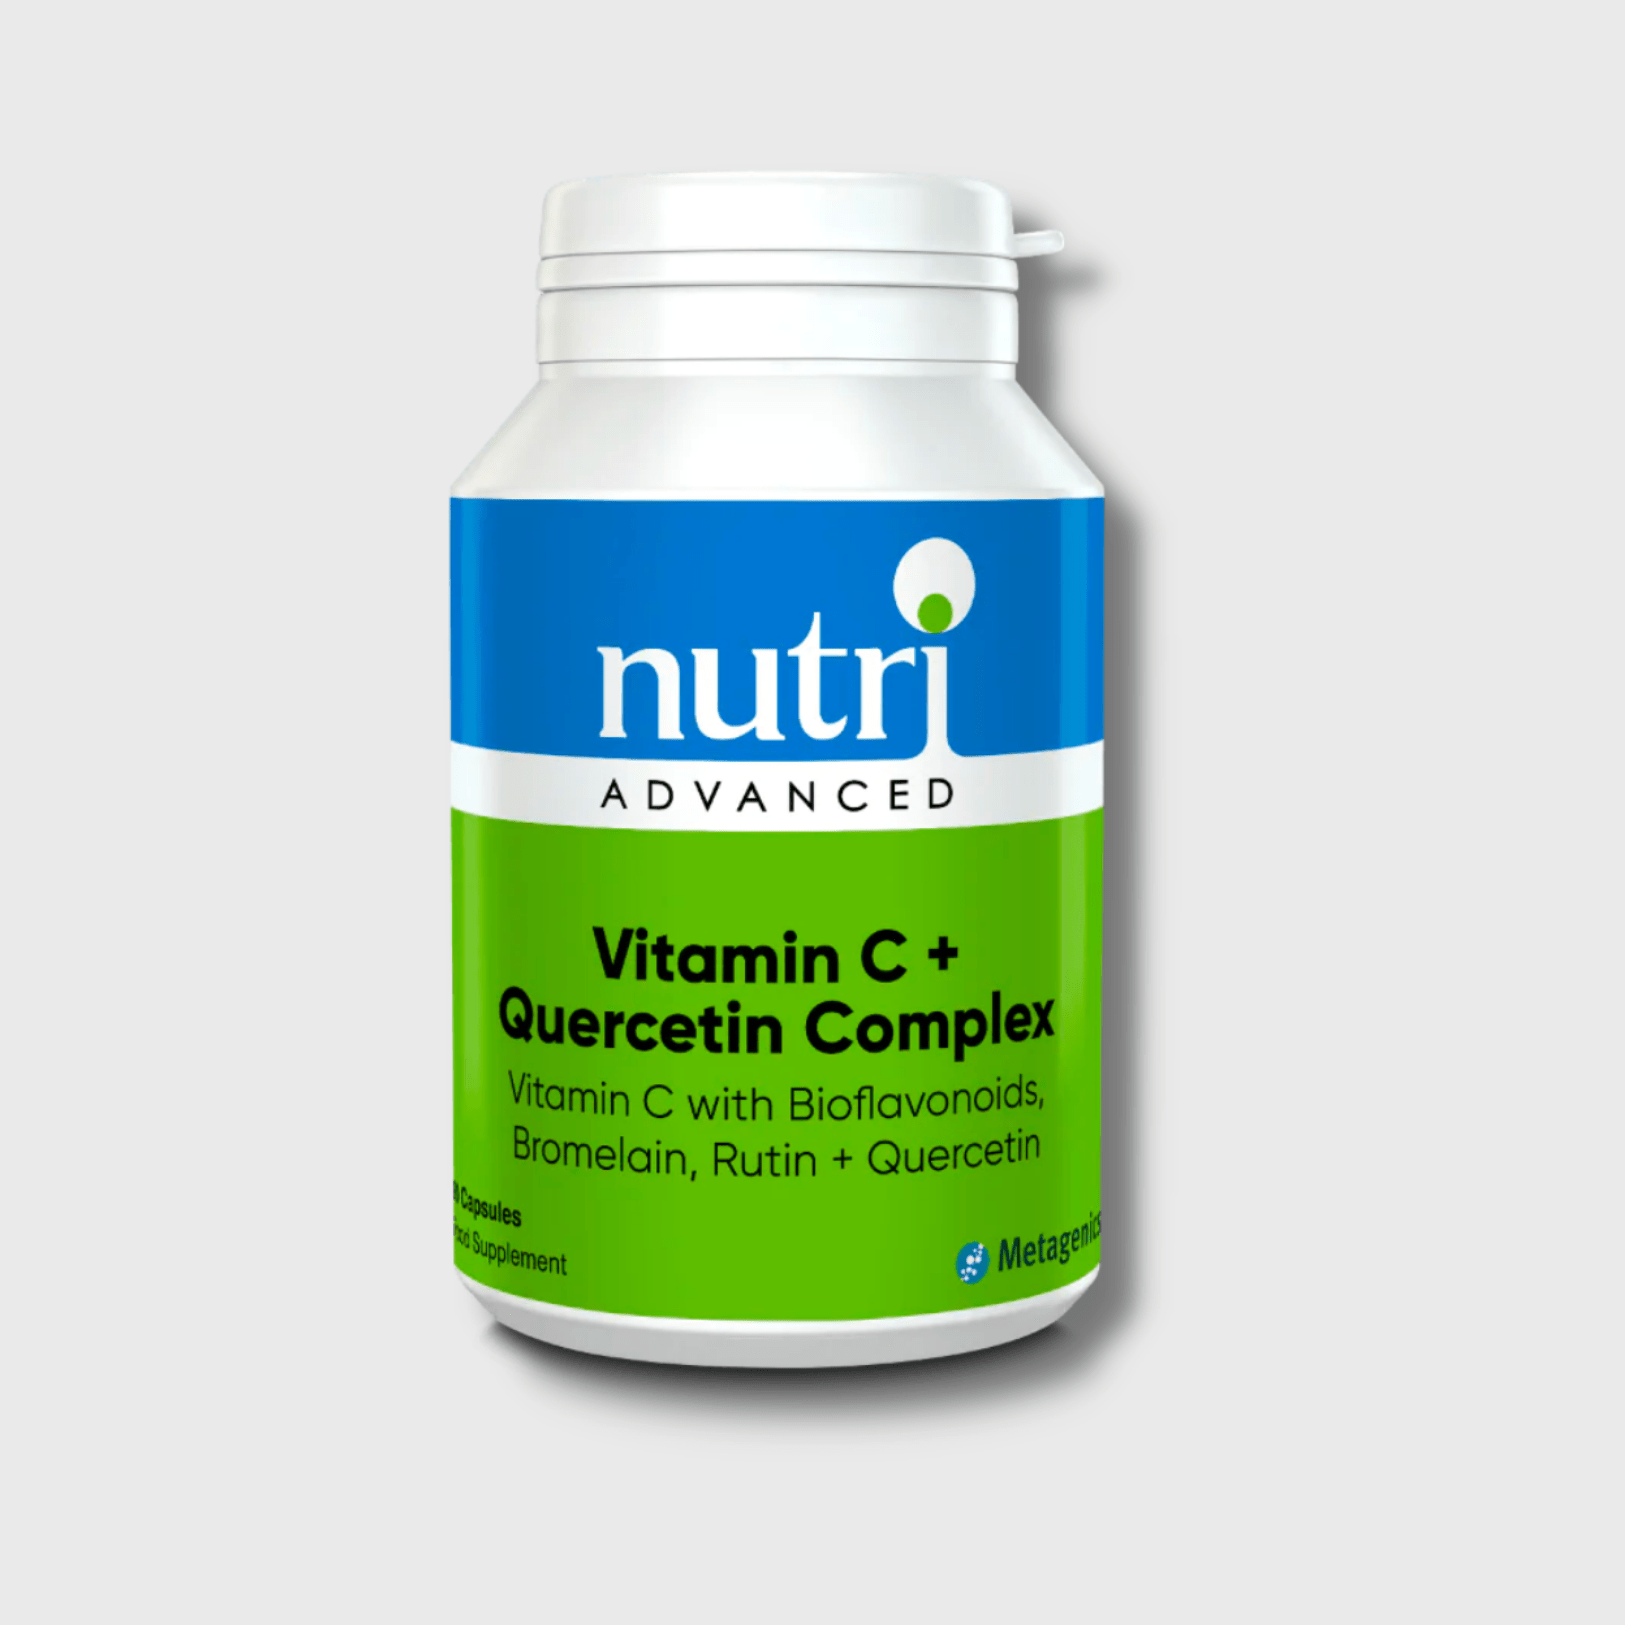 Vitamin C + Quercetin Complex